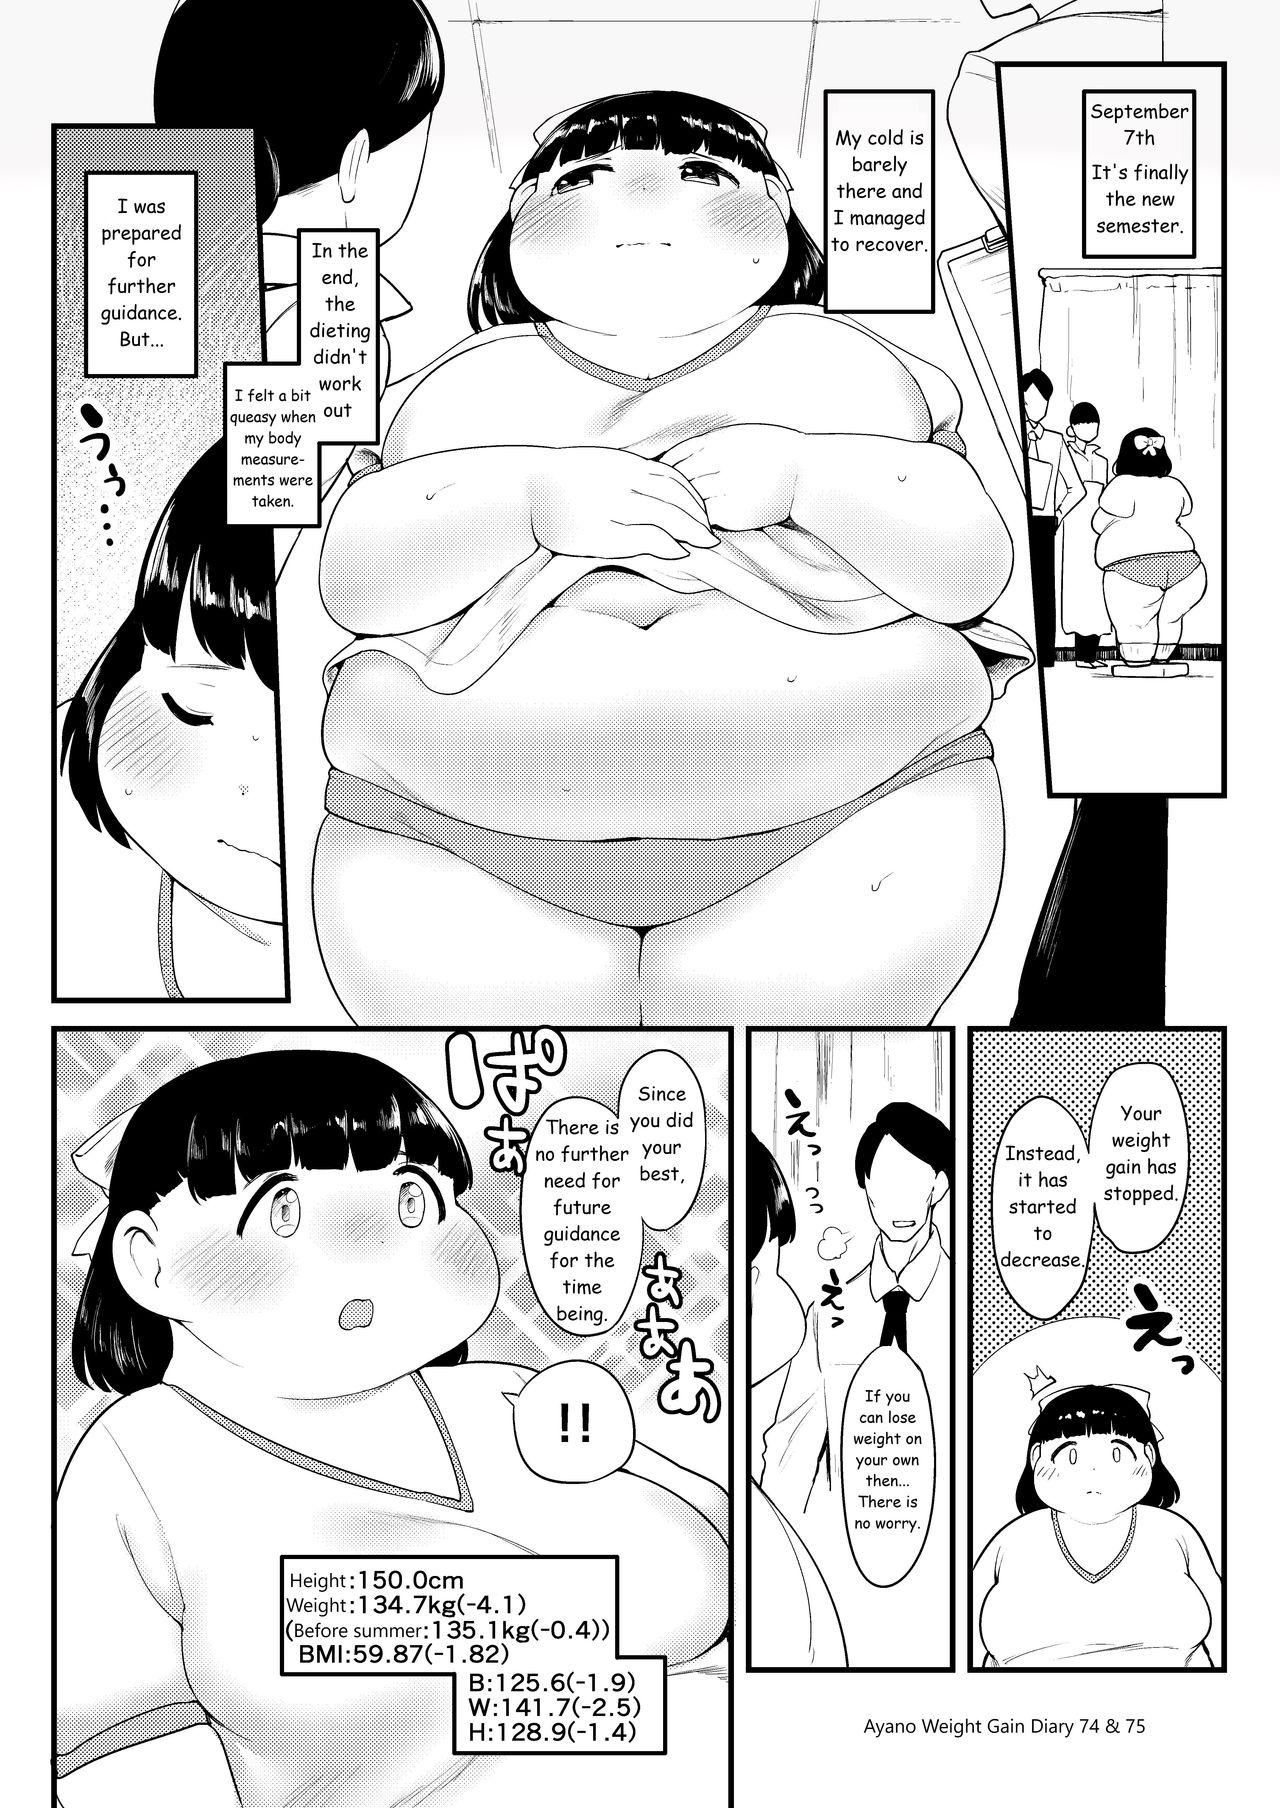 Ayano's Weight Gain Diary 74